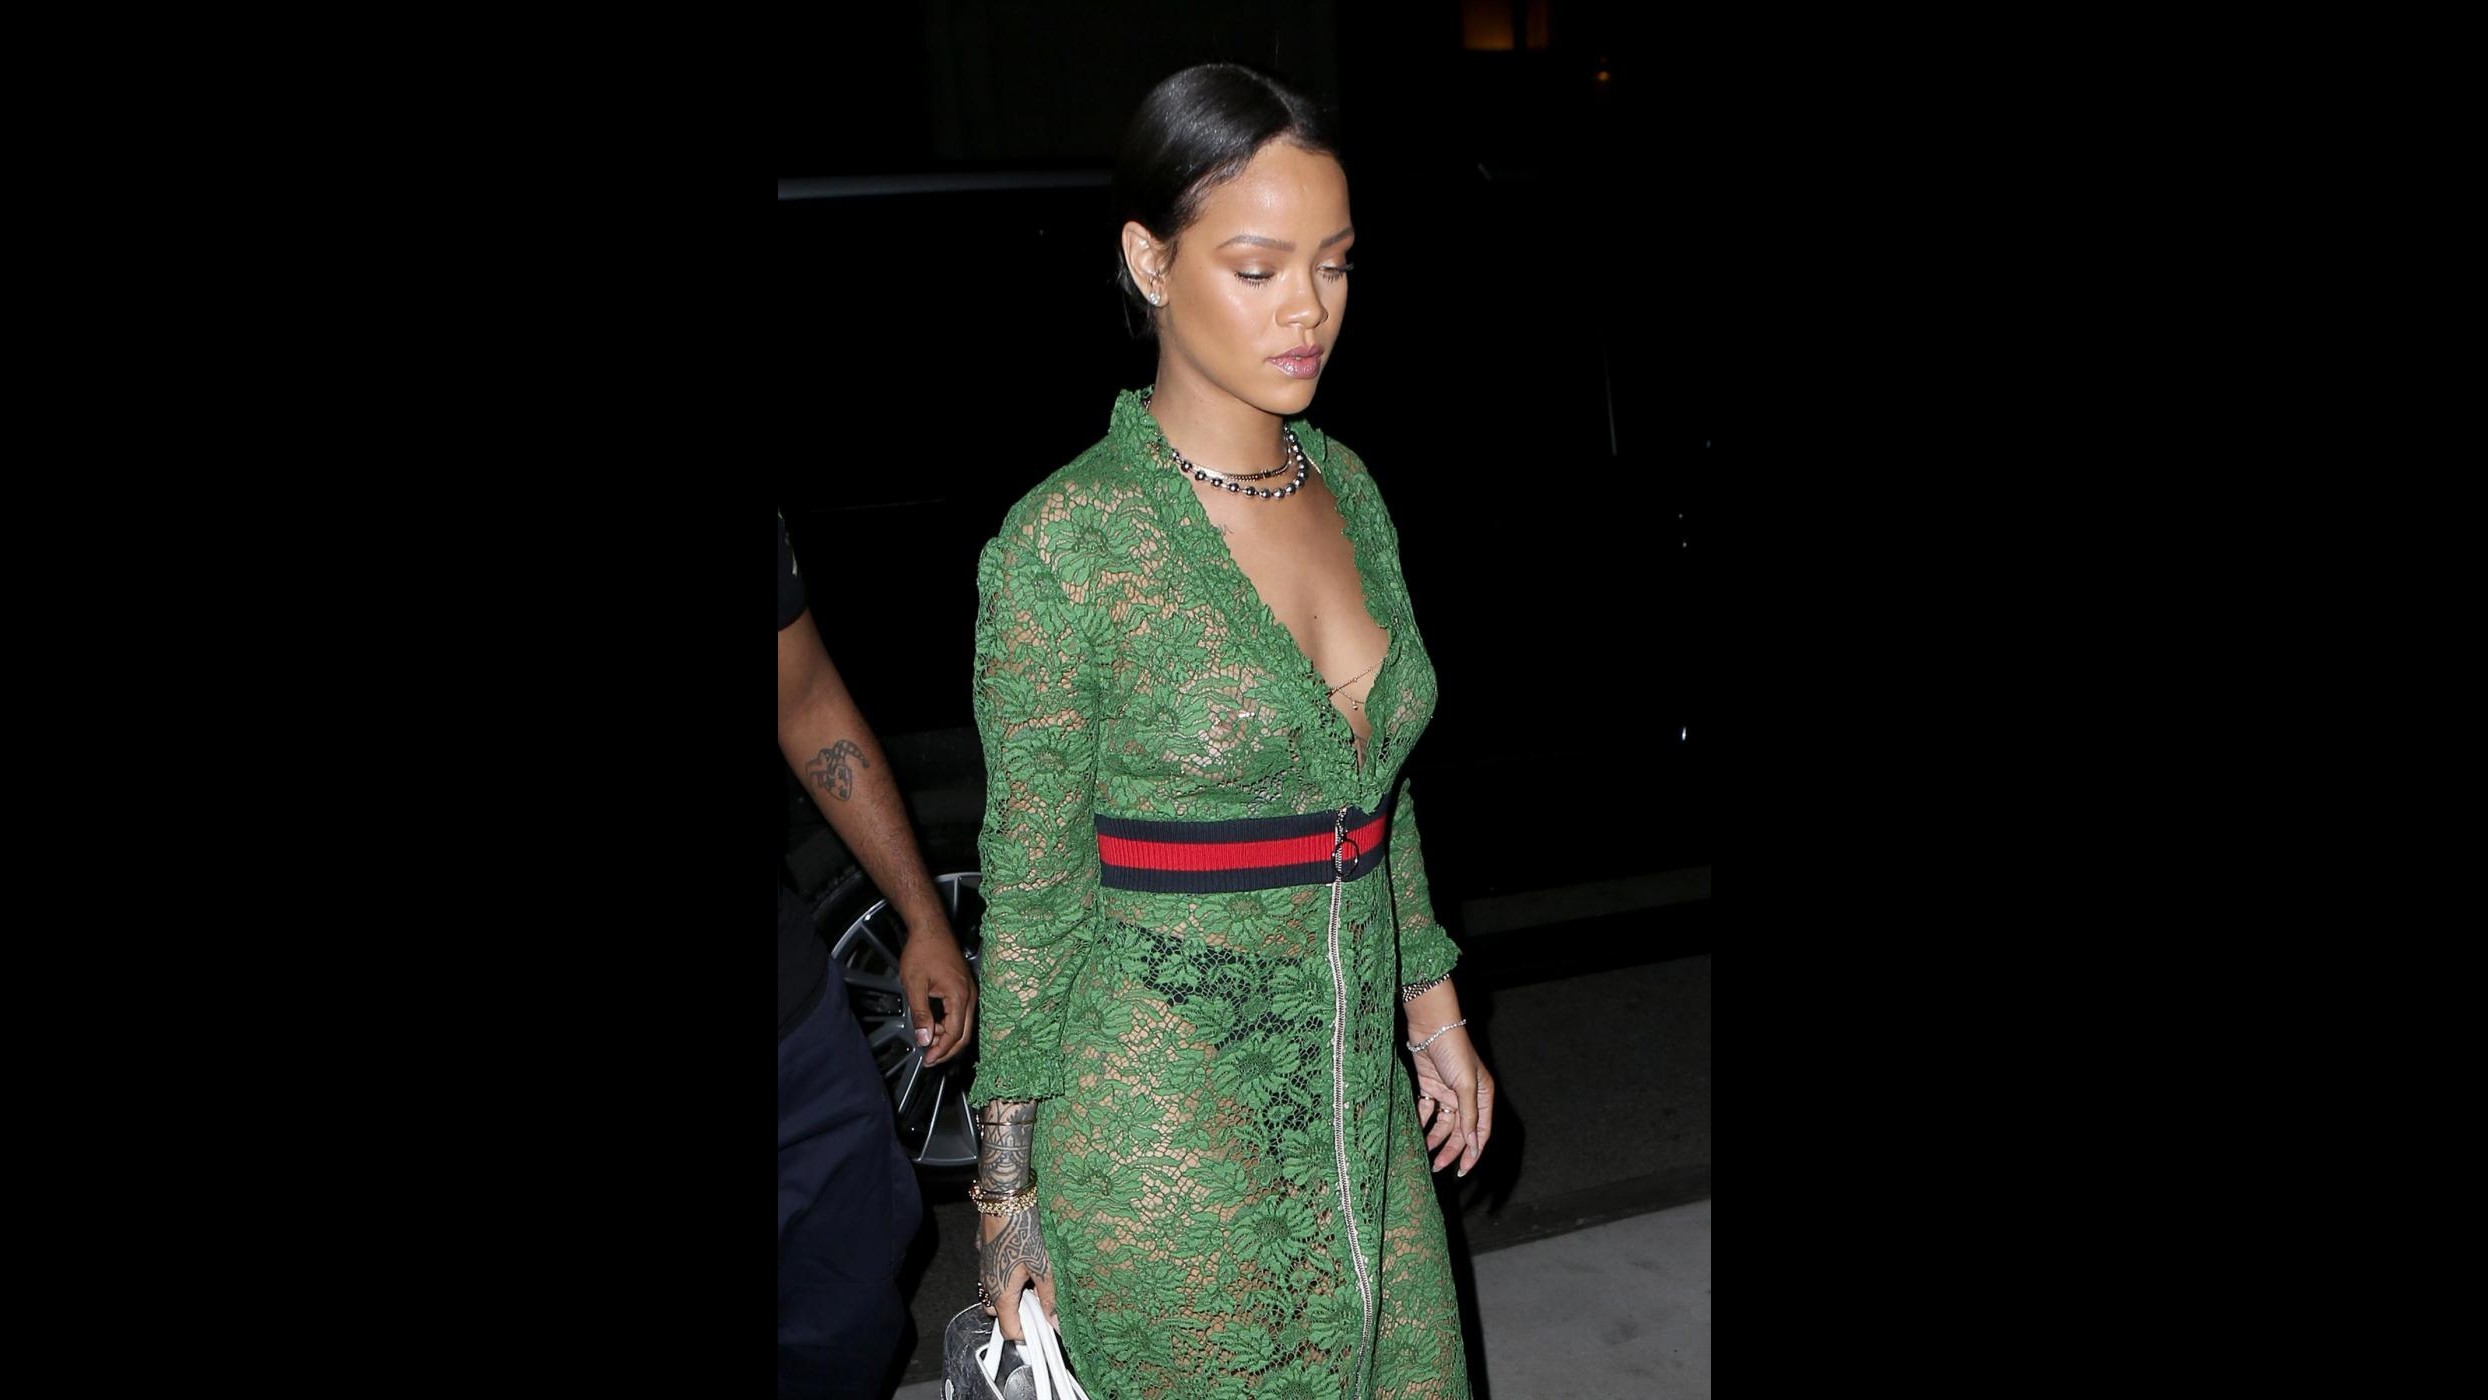 Pizzi, fronzoli e tutù verde: la scelta ‘acida’ di Rihanna